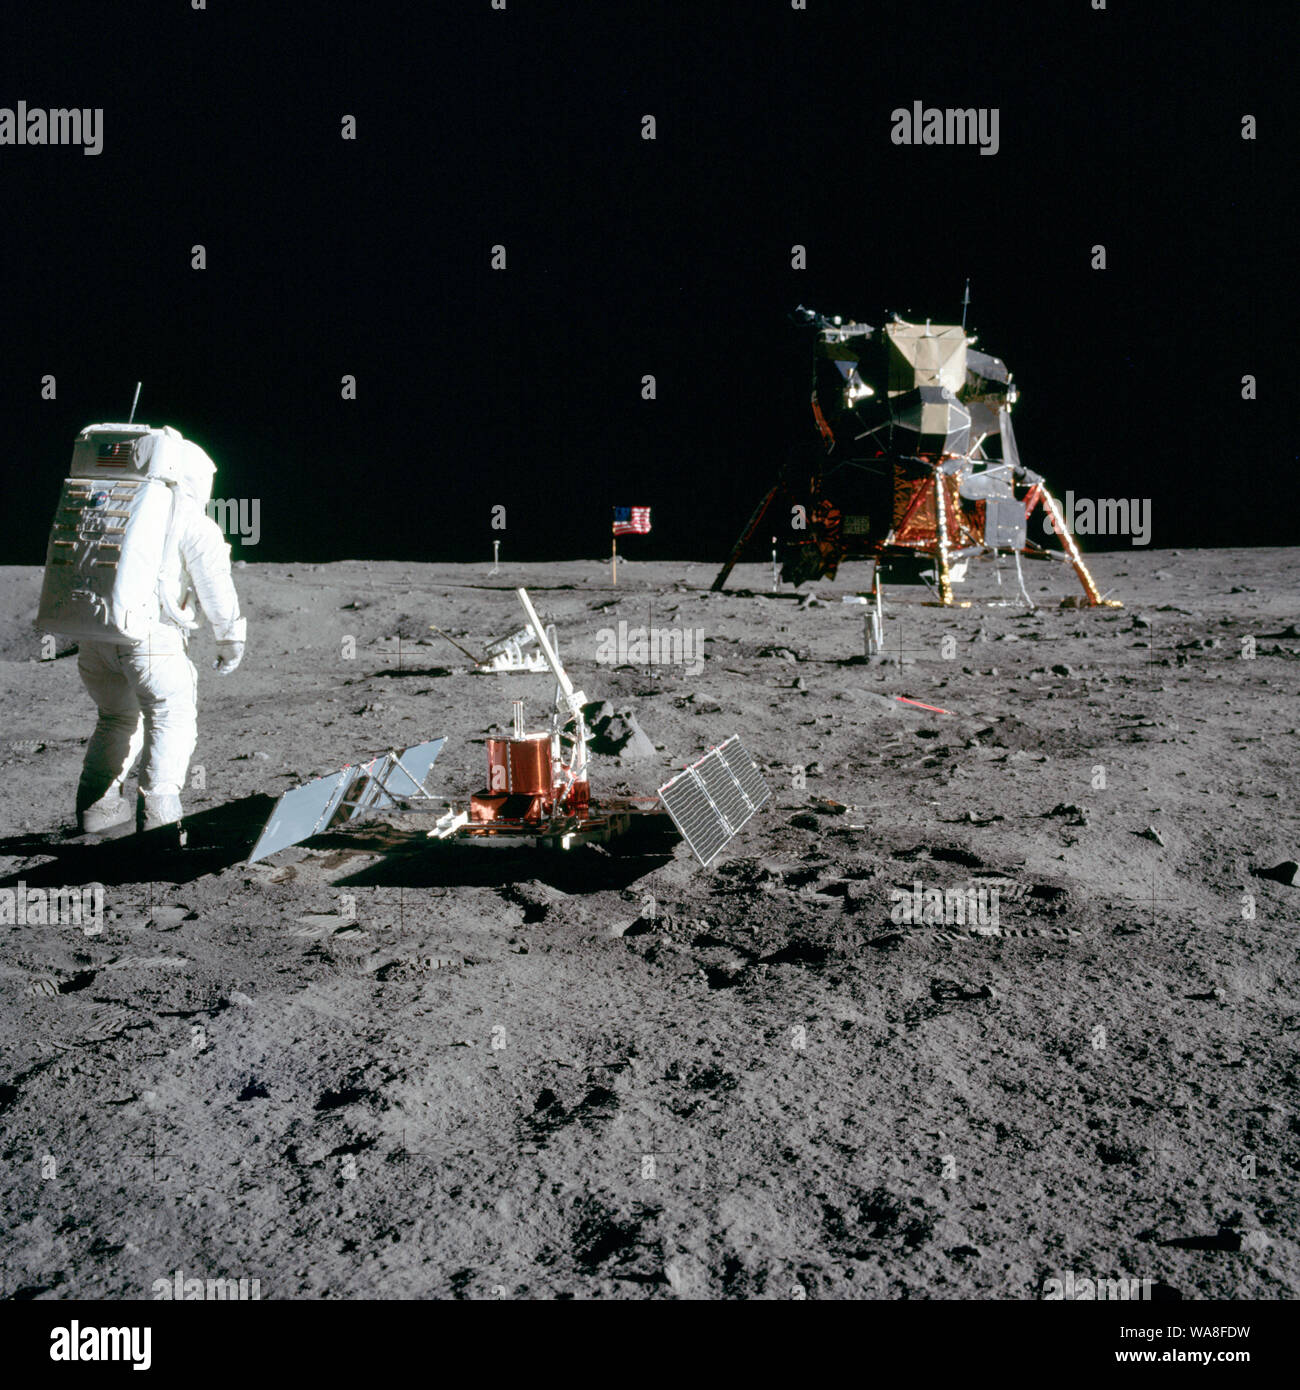 El astronauta Edwin E. "Buzz" Aldrin, Jr., piloto del Módulo Lunar, es fotografiado durante la actividad extravehicular Apolo 11 en la Luna. Él ha desplegado los primeros experimentos científicos Apollo Package (EASEP). En el primer plano es el experimento sísmico pasivo Package (PSEP); más allá está el Láser Retro-Reflector (LR-3); en el centro de fondo es la bandera de los Estados Unidos; en el fondo izquierdo es el blanco y negro de la superficie lunar cámara de televisión; en el extremo derecho de fondo es el módulo lunar "Eagle". El astronauta Neil A. Armstrong, comandante, tomó esta fotografía con un 70mm s lunar Foto de stock